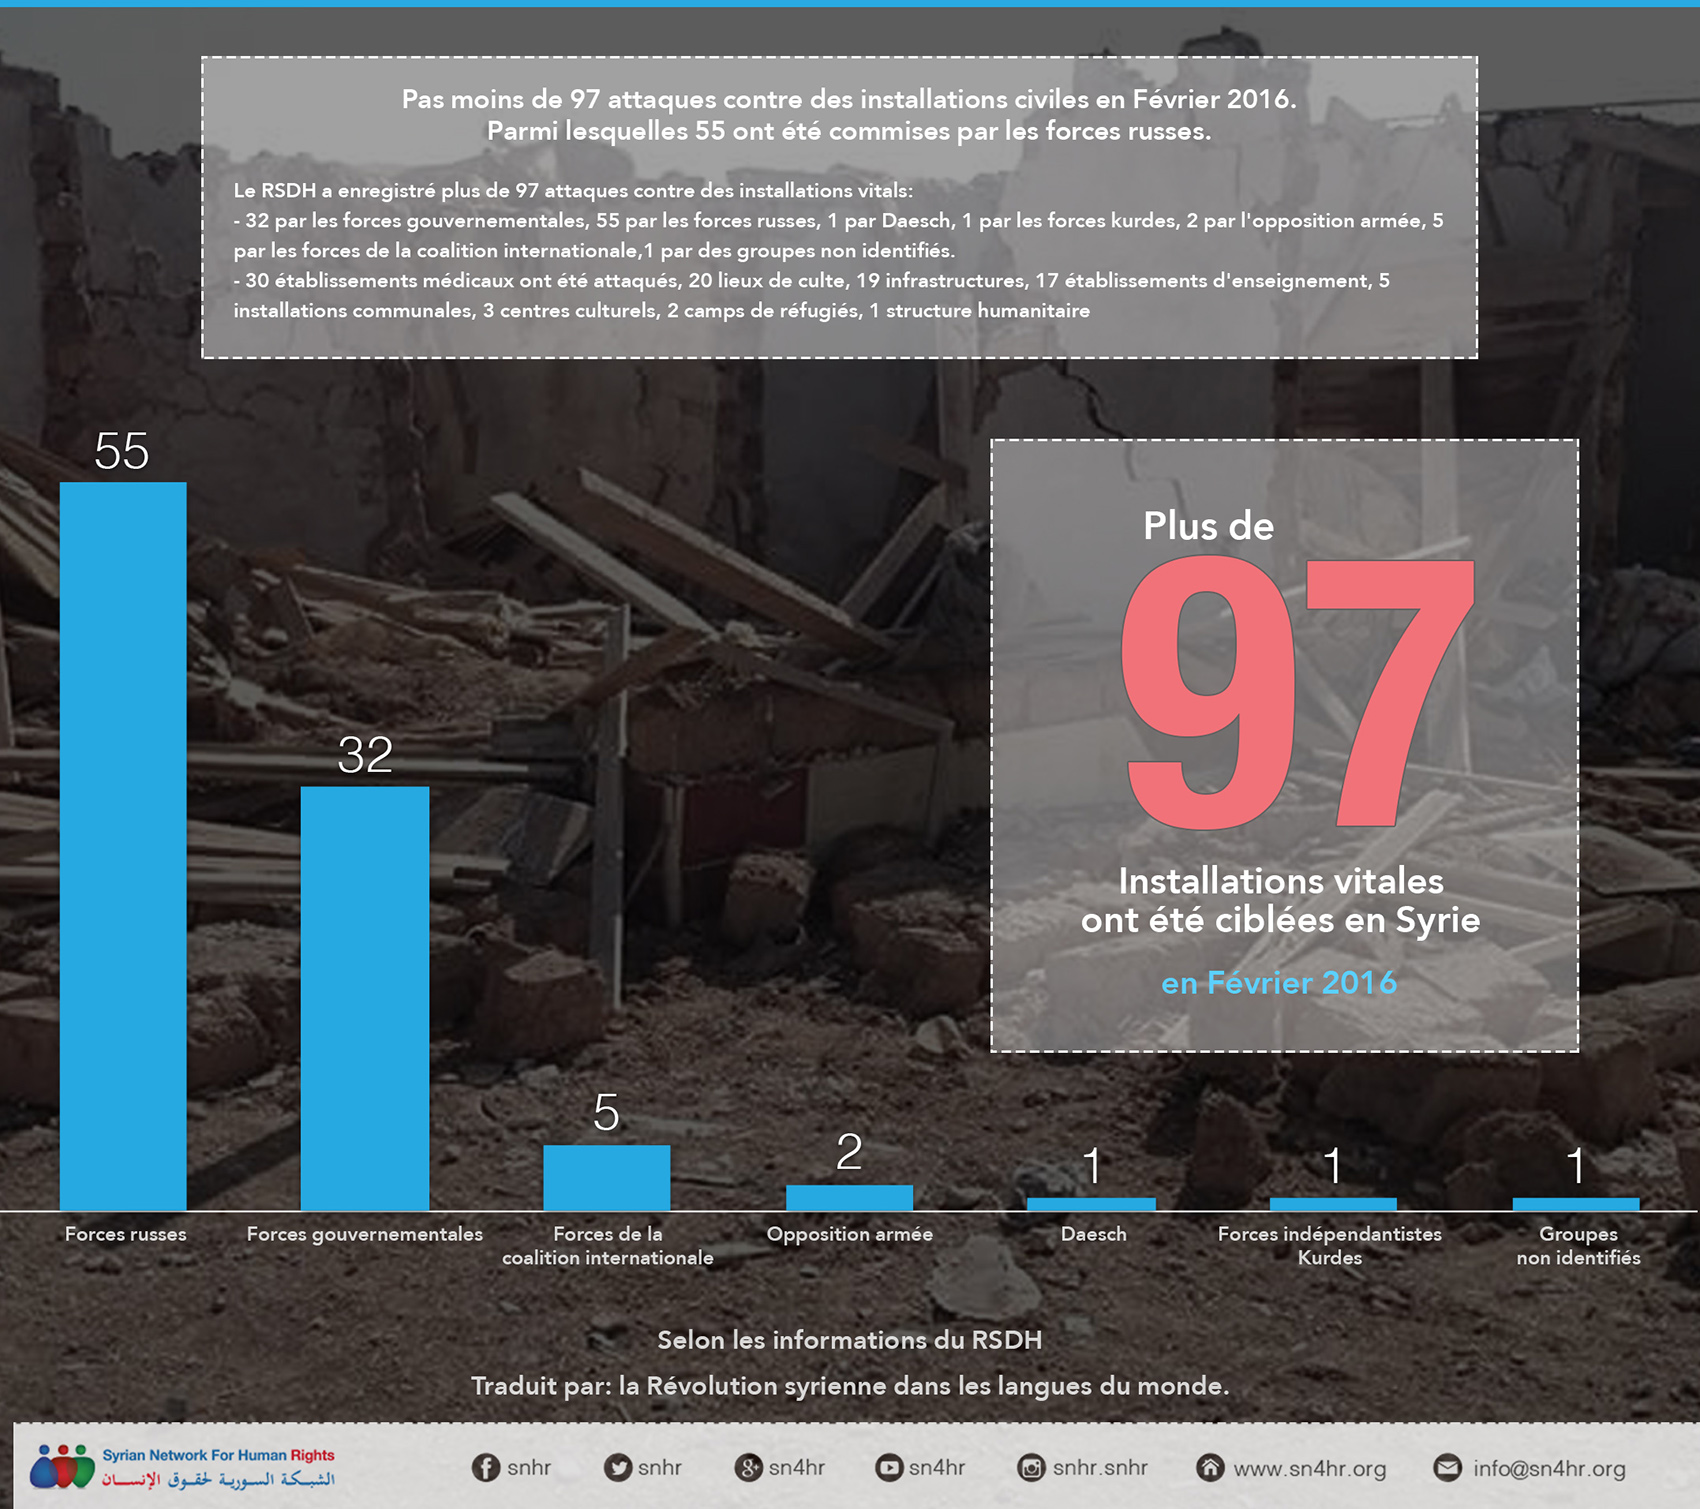 Pas moins de 97 attaques contre des installations civiles en Février 2016